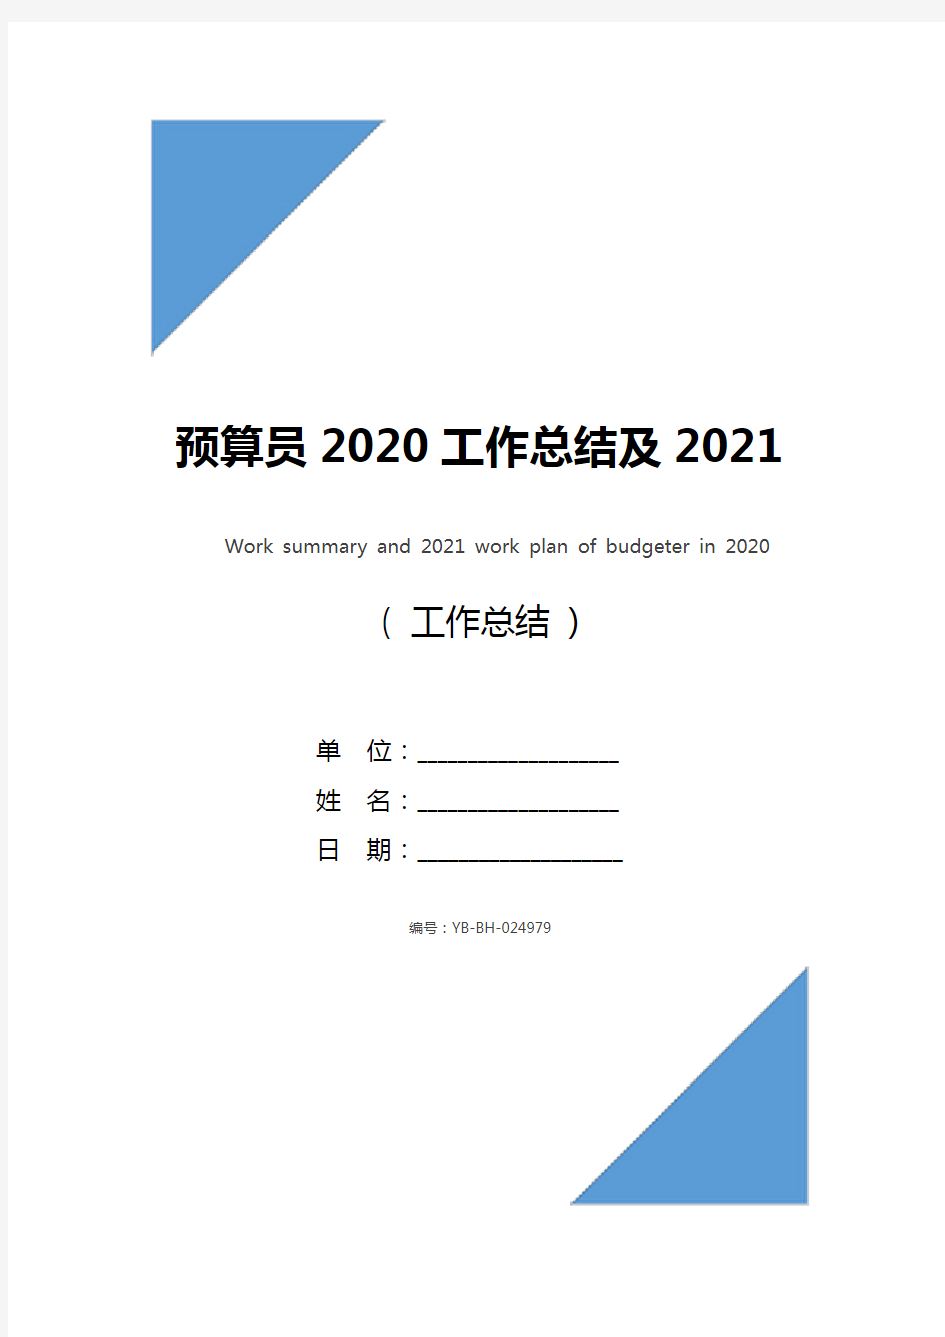 预算员2020工作总结及2021工作计划